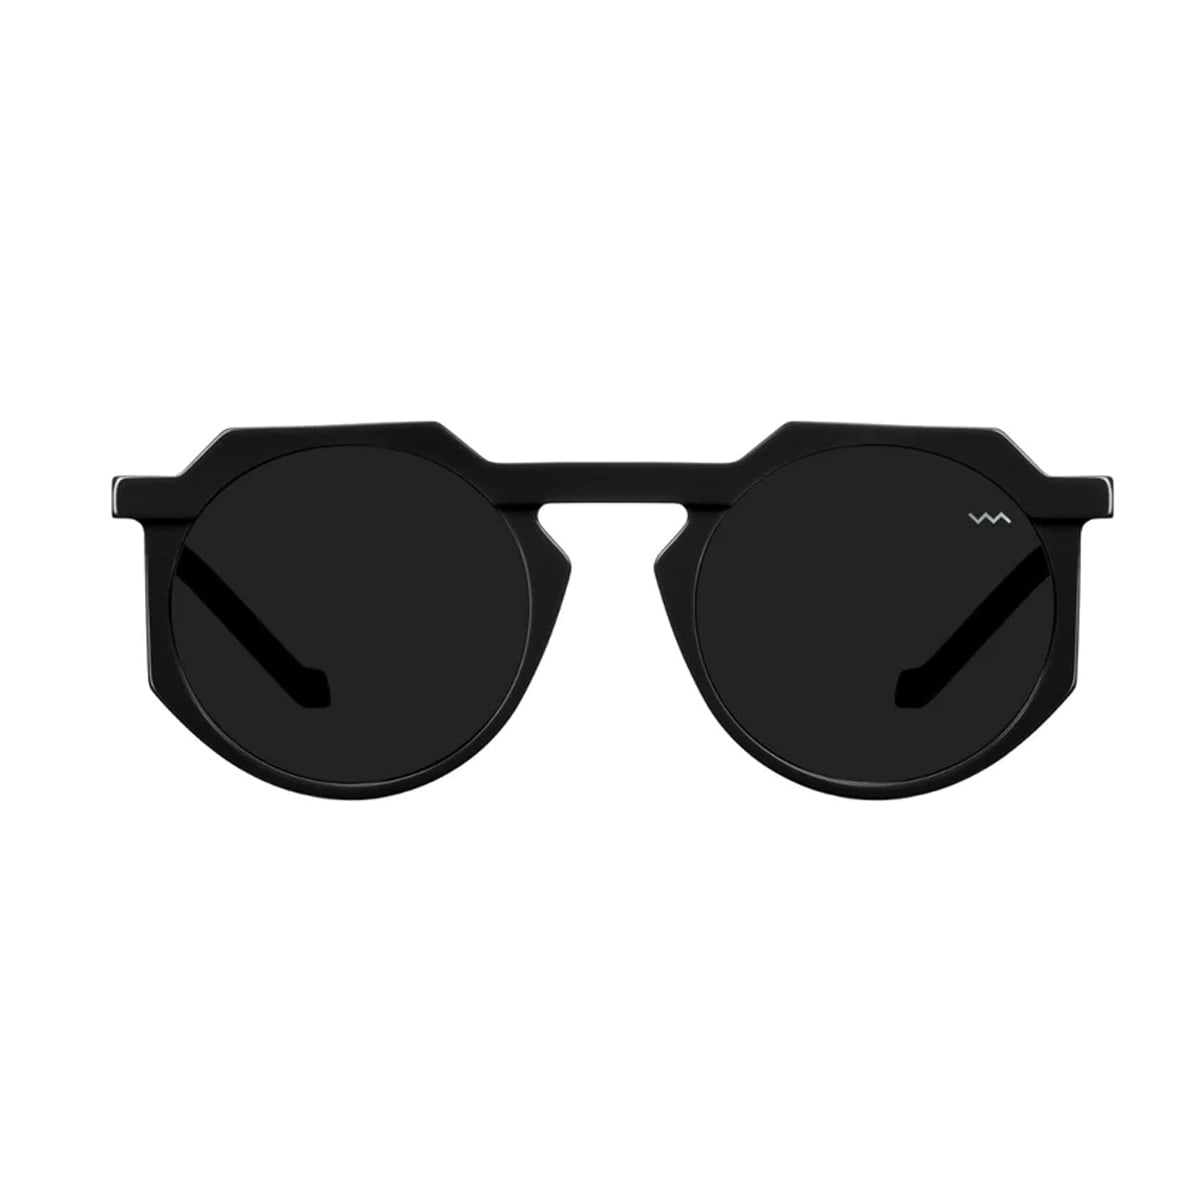 Vava Wl0028 Black Sunglasses In Nero